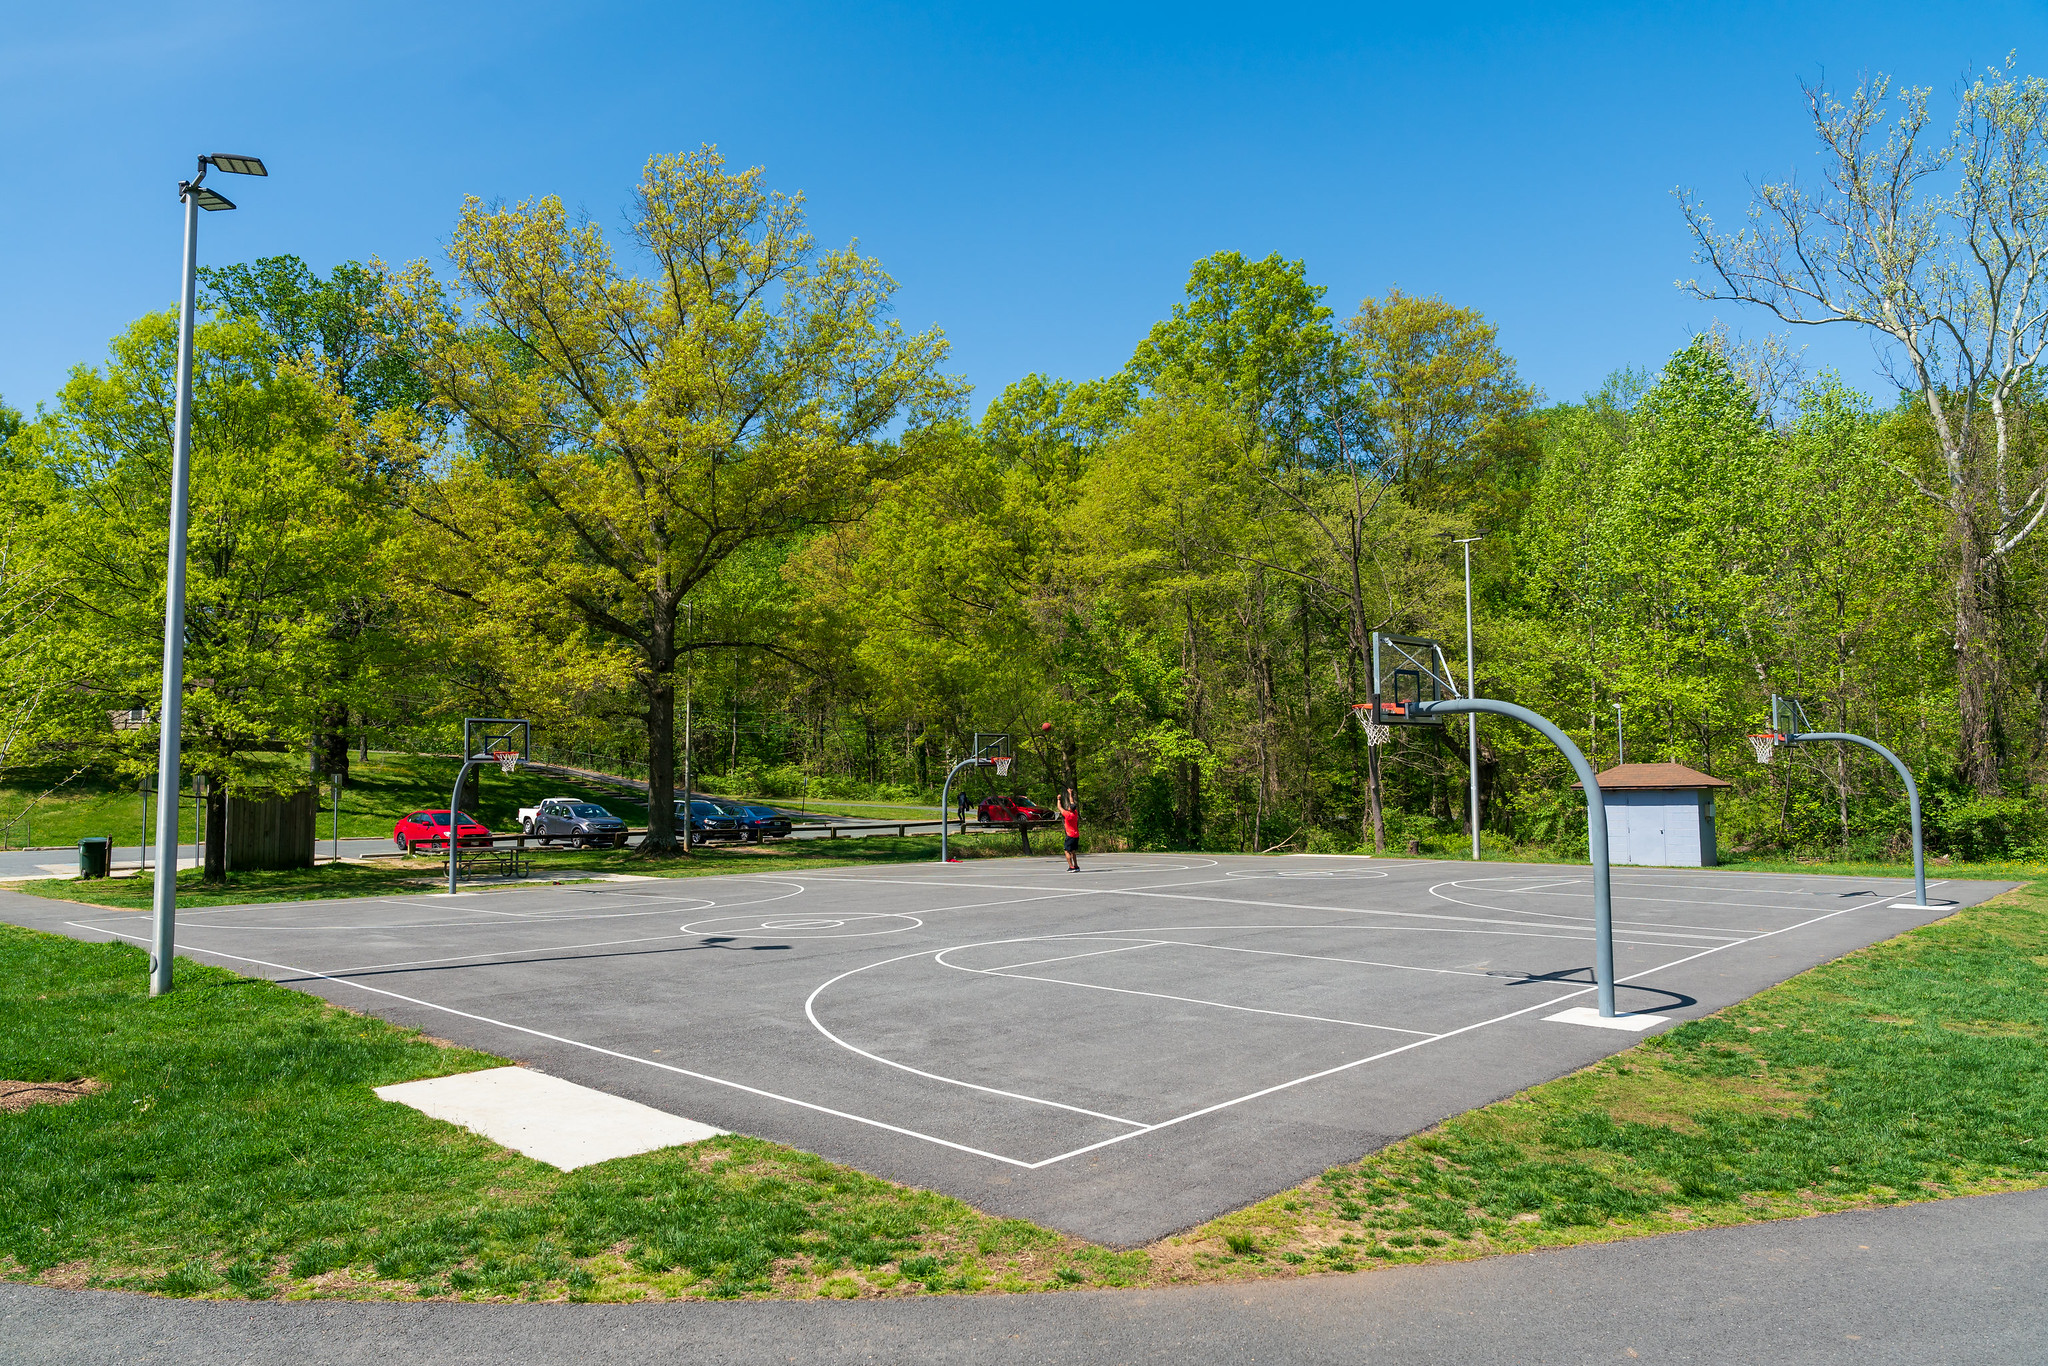 Basketball courts at Ken-Gar Palisades Local Park